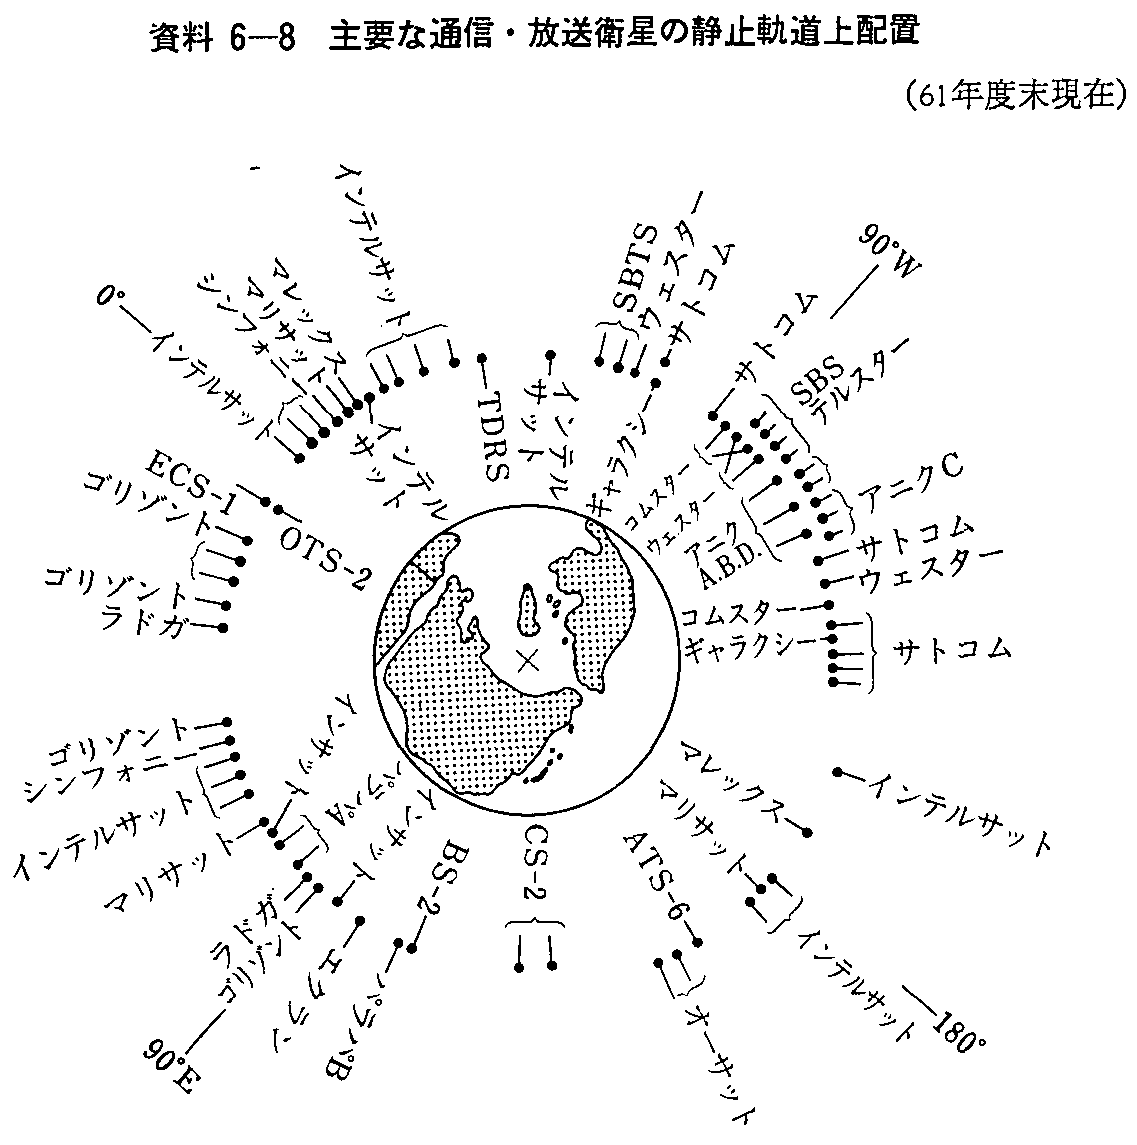 6-8 vȒʐMEq̐Î~Ozu(61Nx)